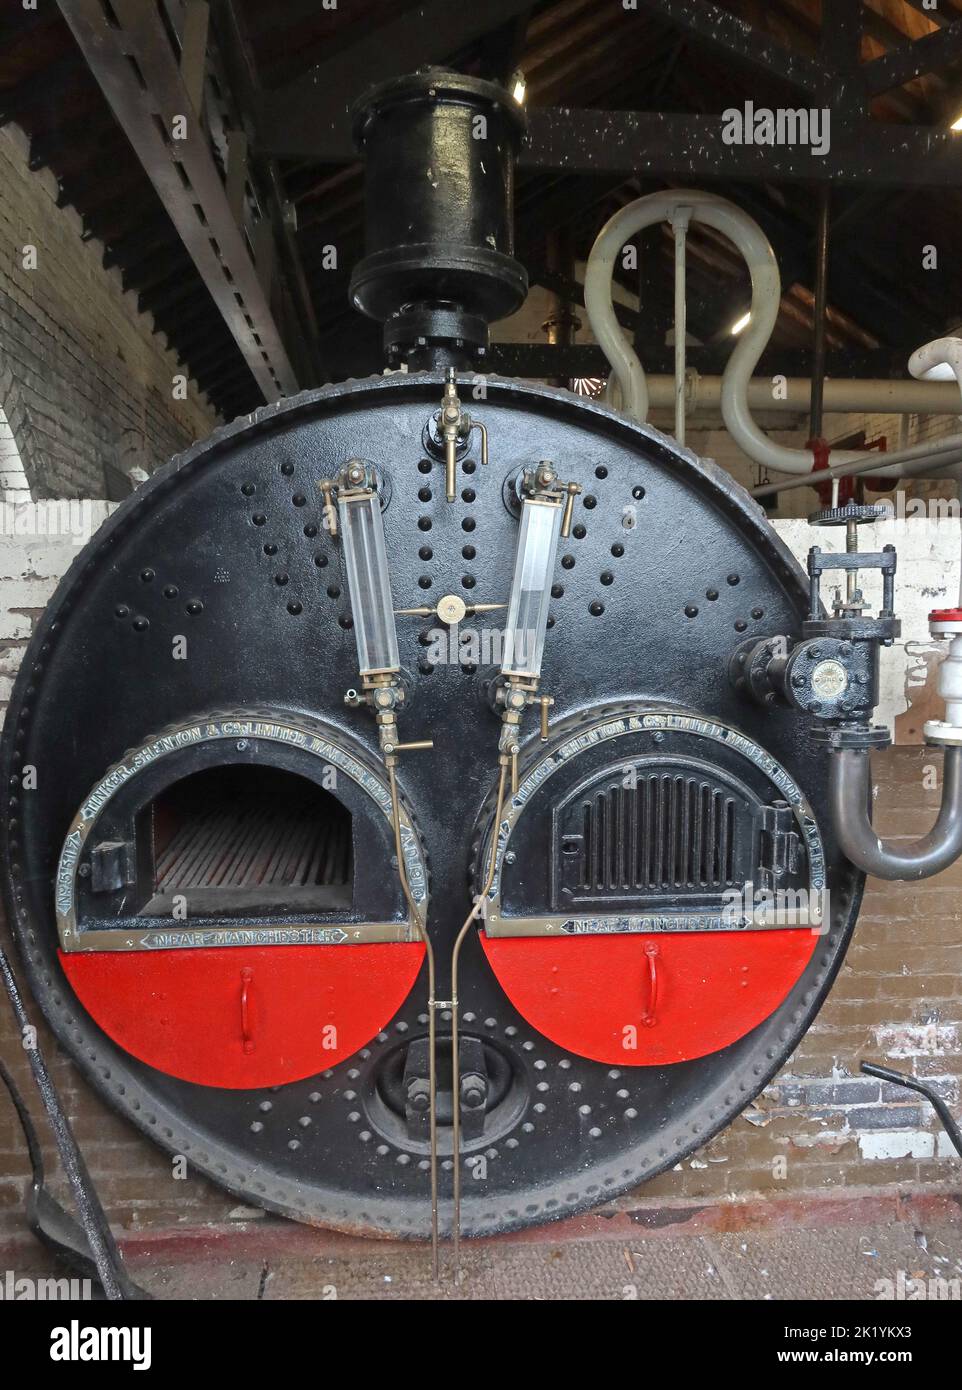 Tinker , Shenton, pompe à eau à vapeur, Musée national des voies navigables, South Pier Rd, Ellesmere Port, Cheshire, Angleterre, Royaume-Uni, CH65 4FW Banque D'Images